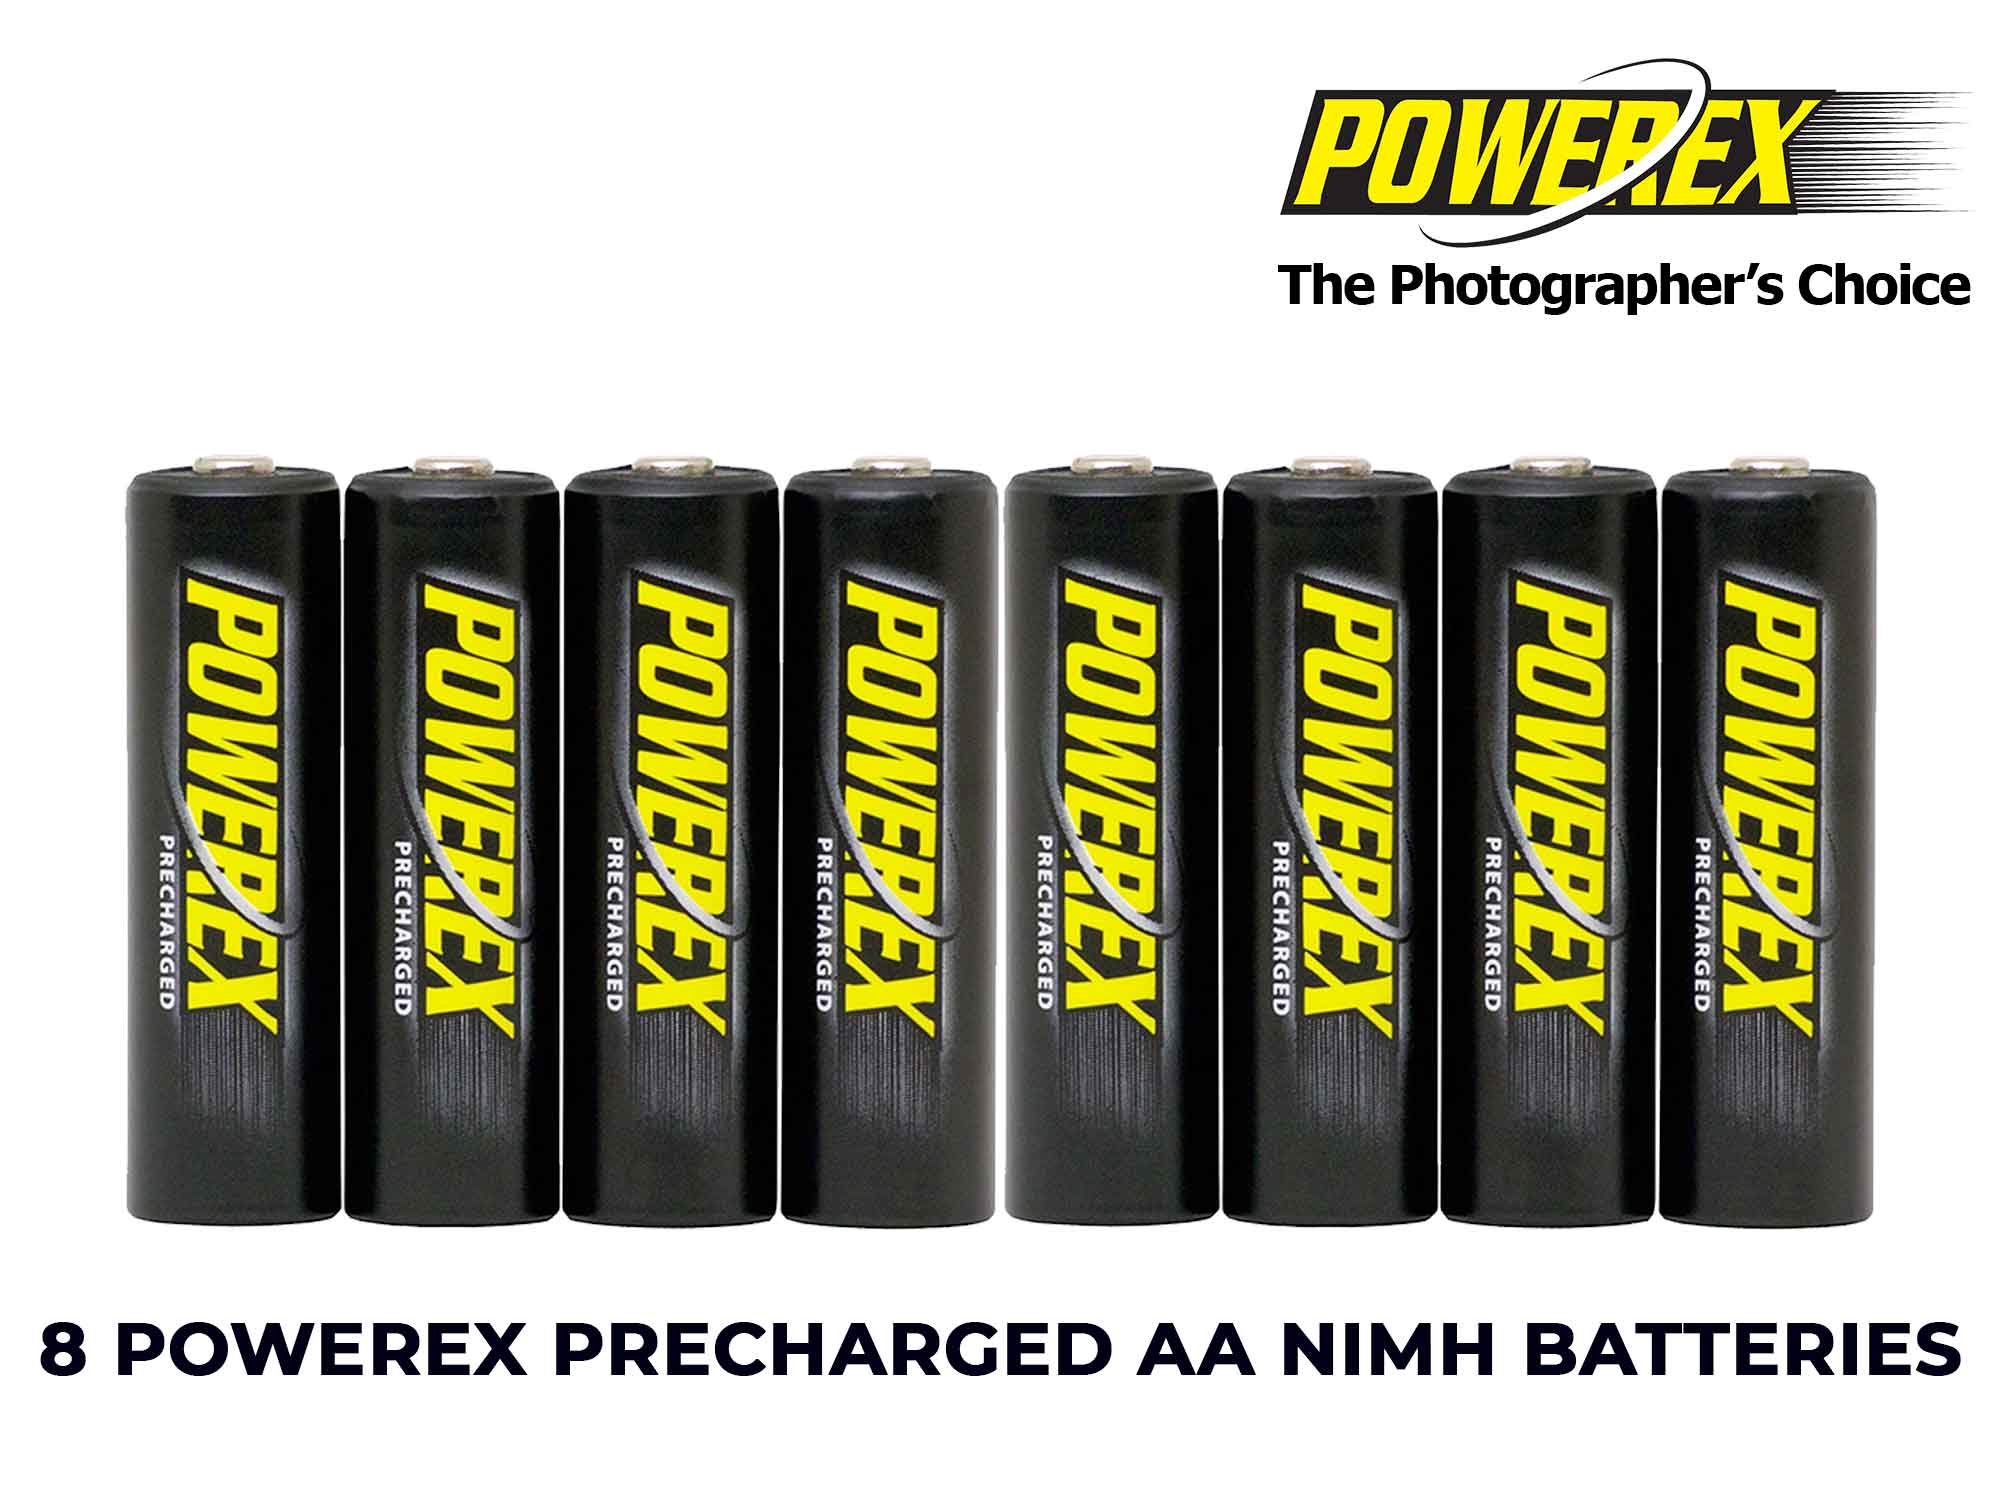 Maha Powerex PRECHARGED - AA Batteries - 2,600mAh 8pack